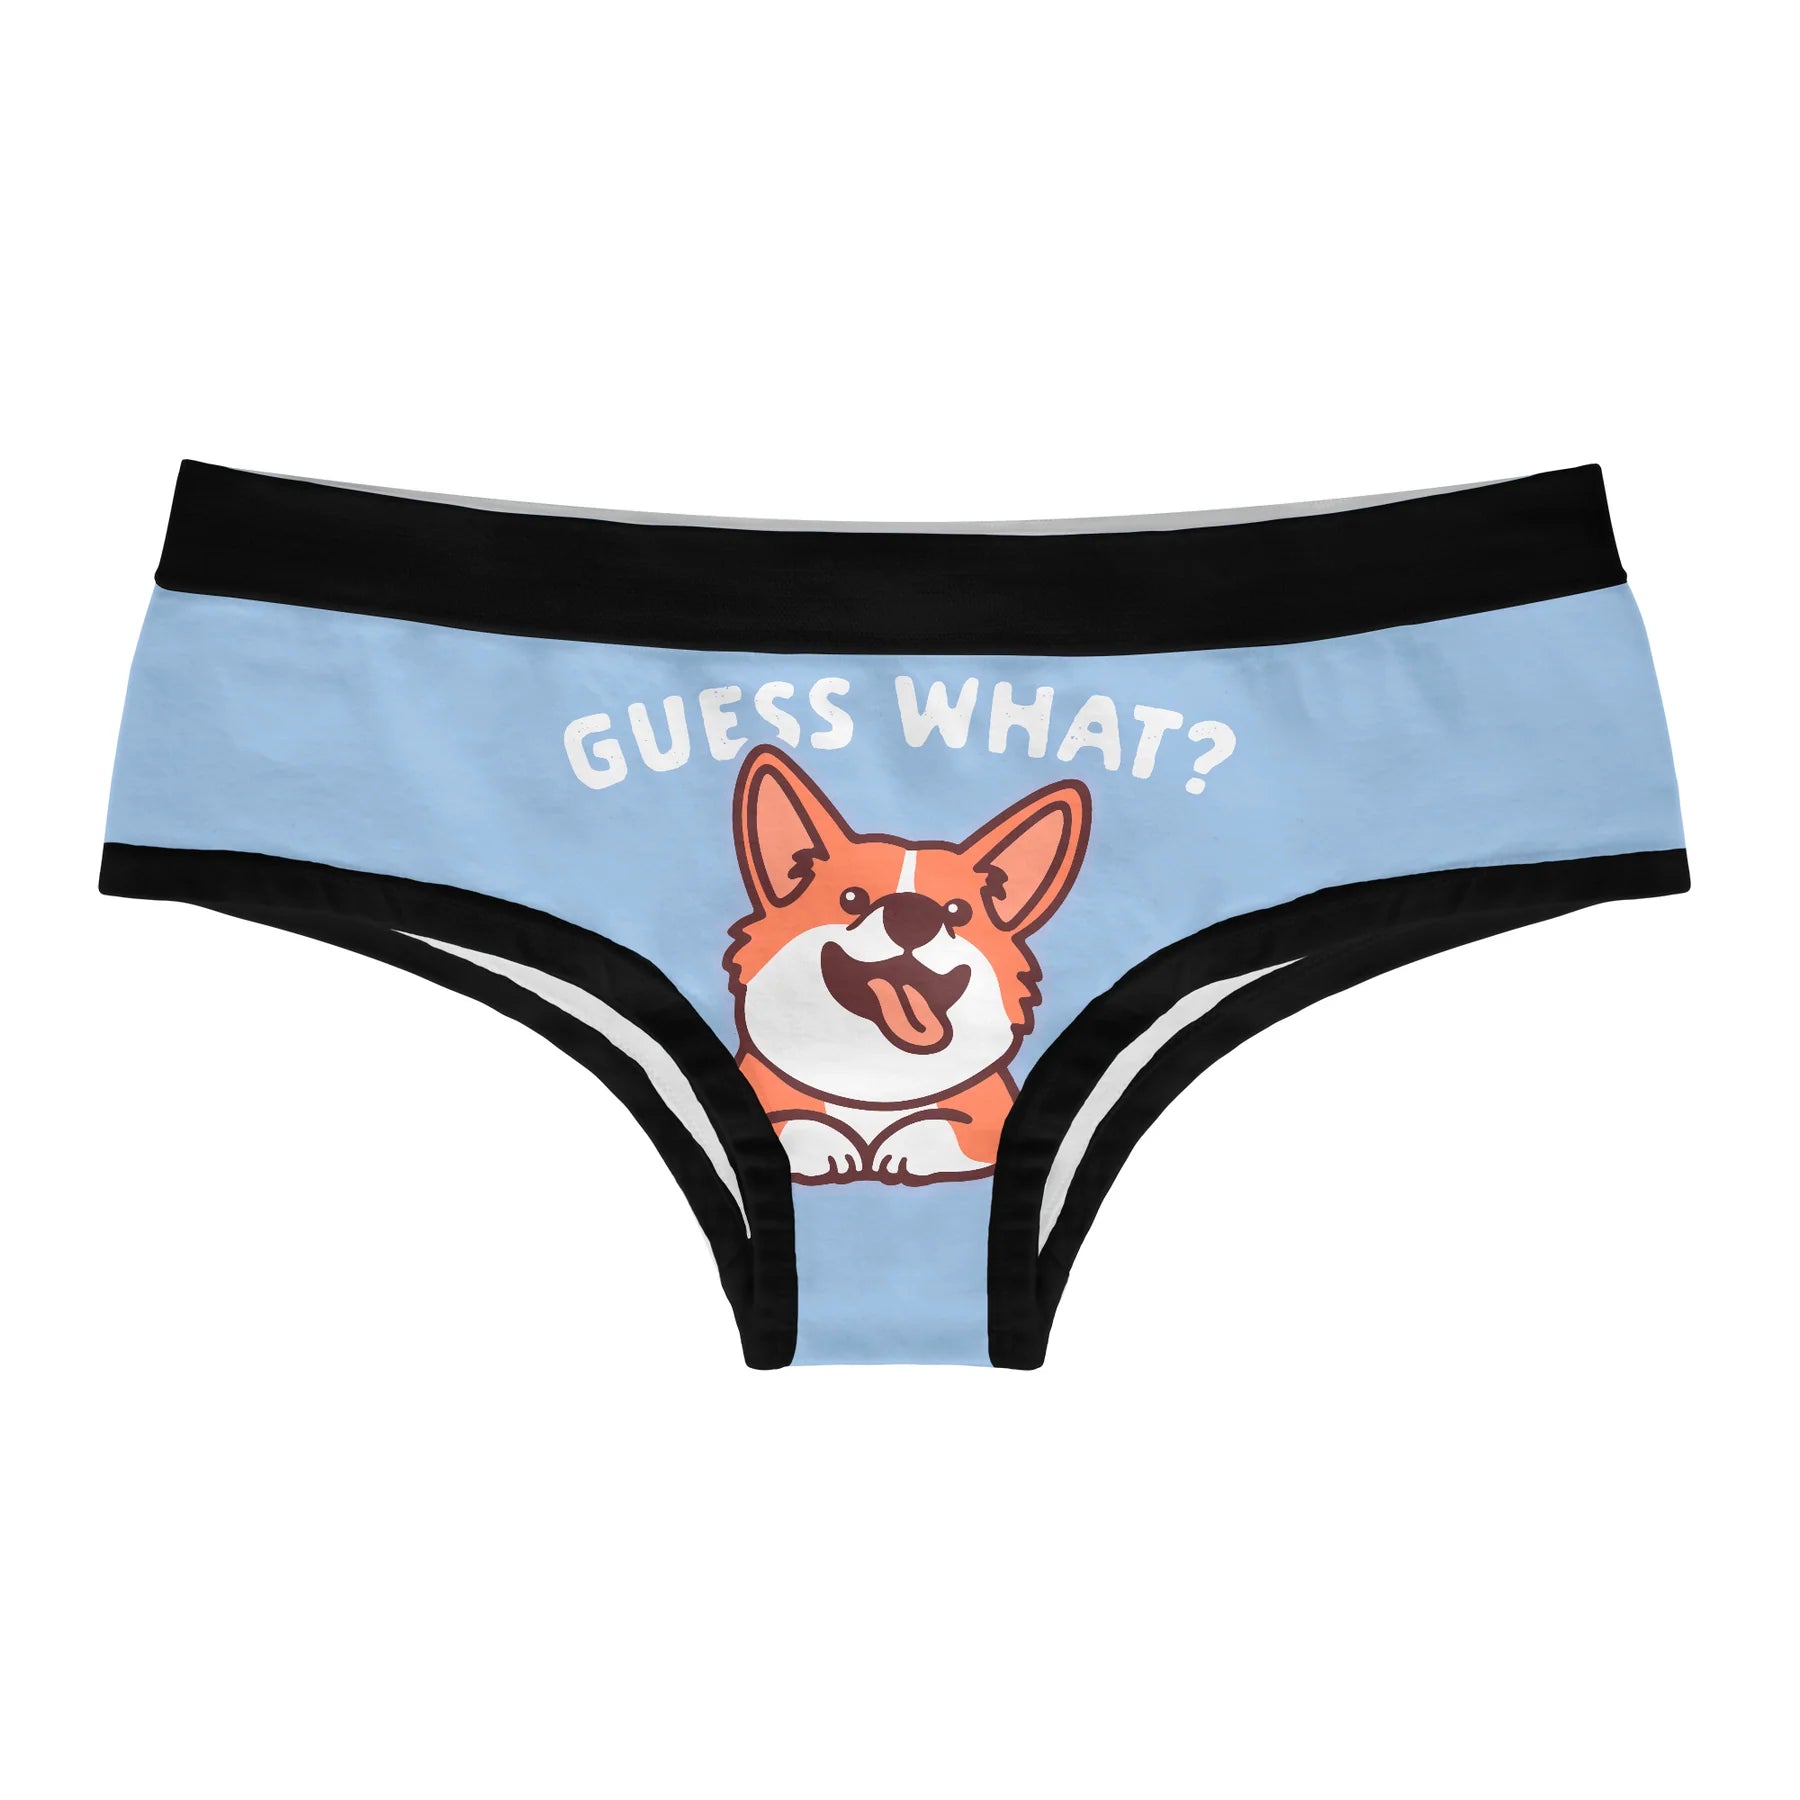 Used Panties Prank Mail – Design Doggie